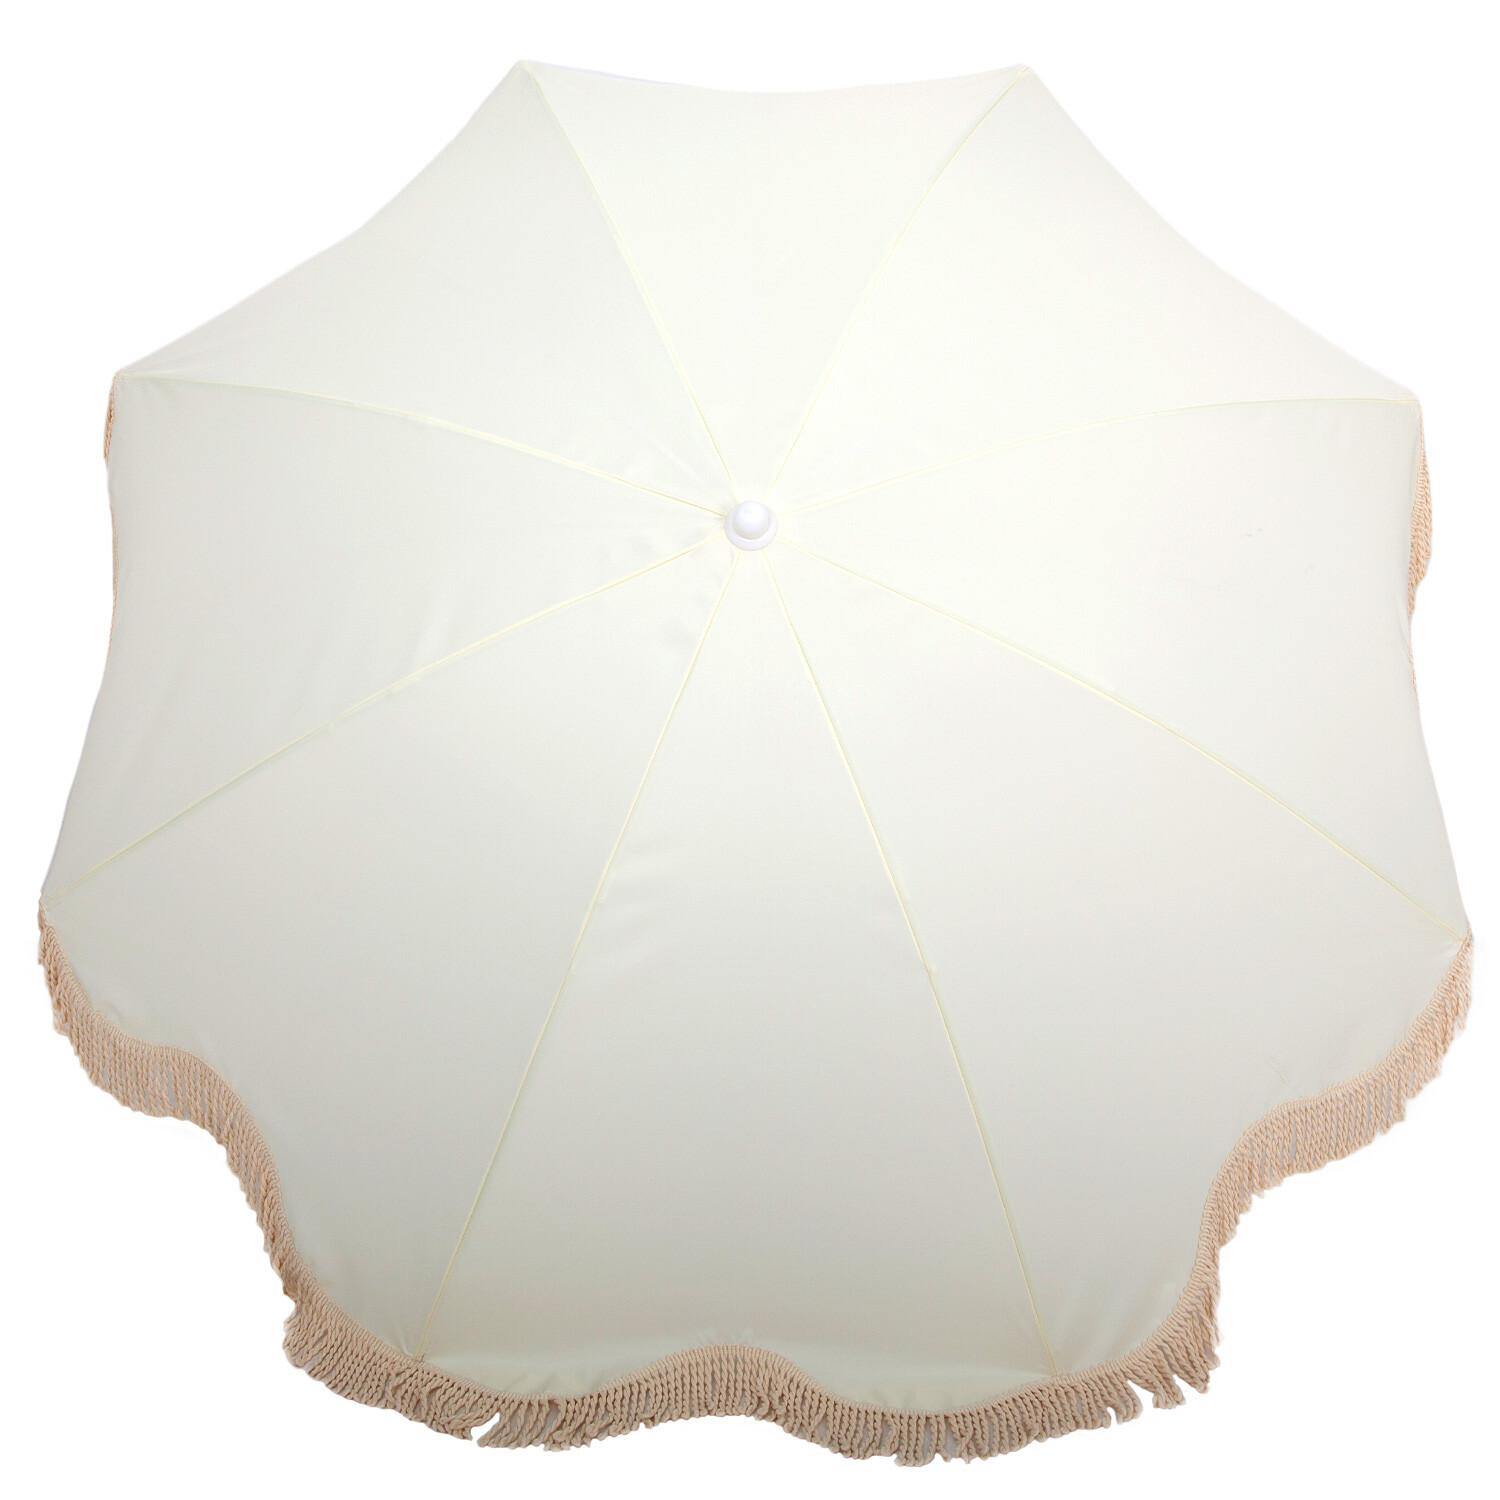 Cream Beach Umbrella with Tassels 1.7m Image 2